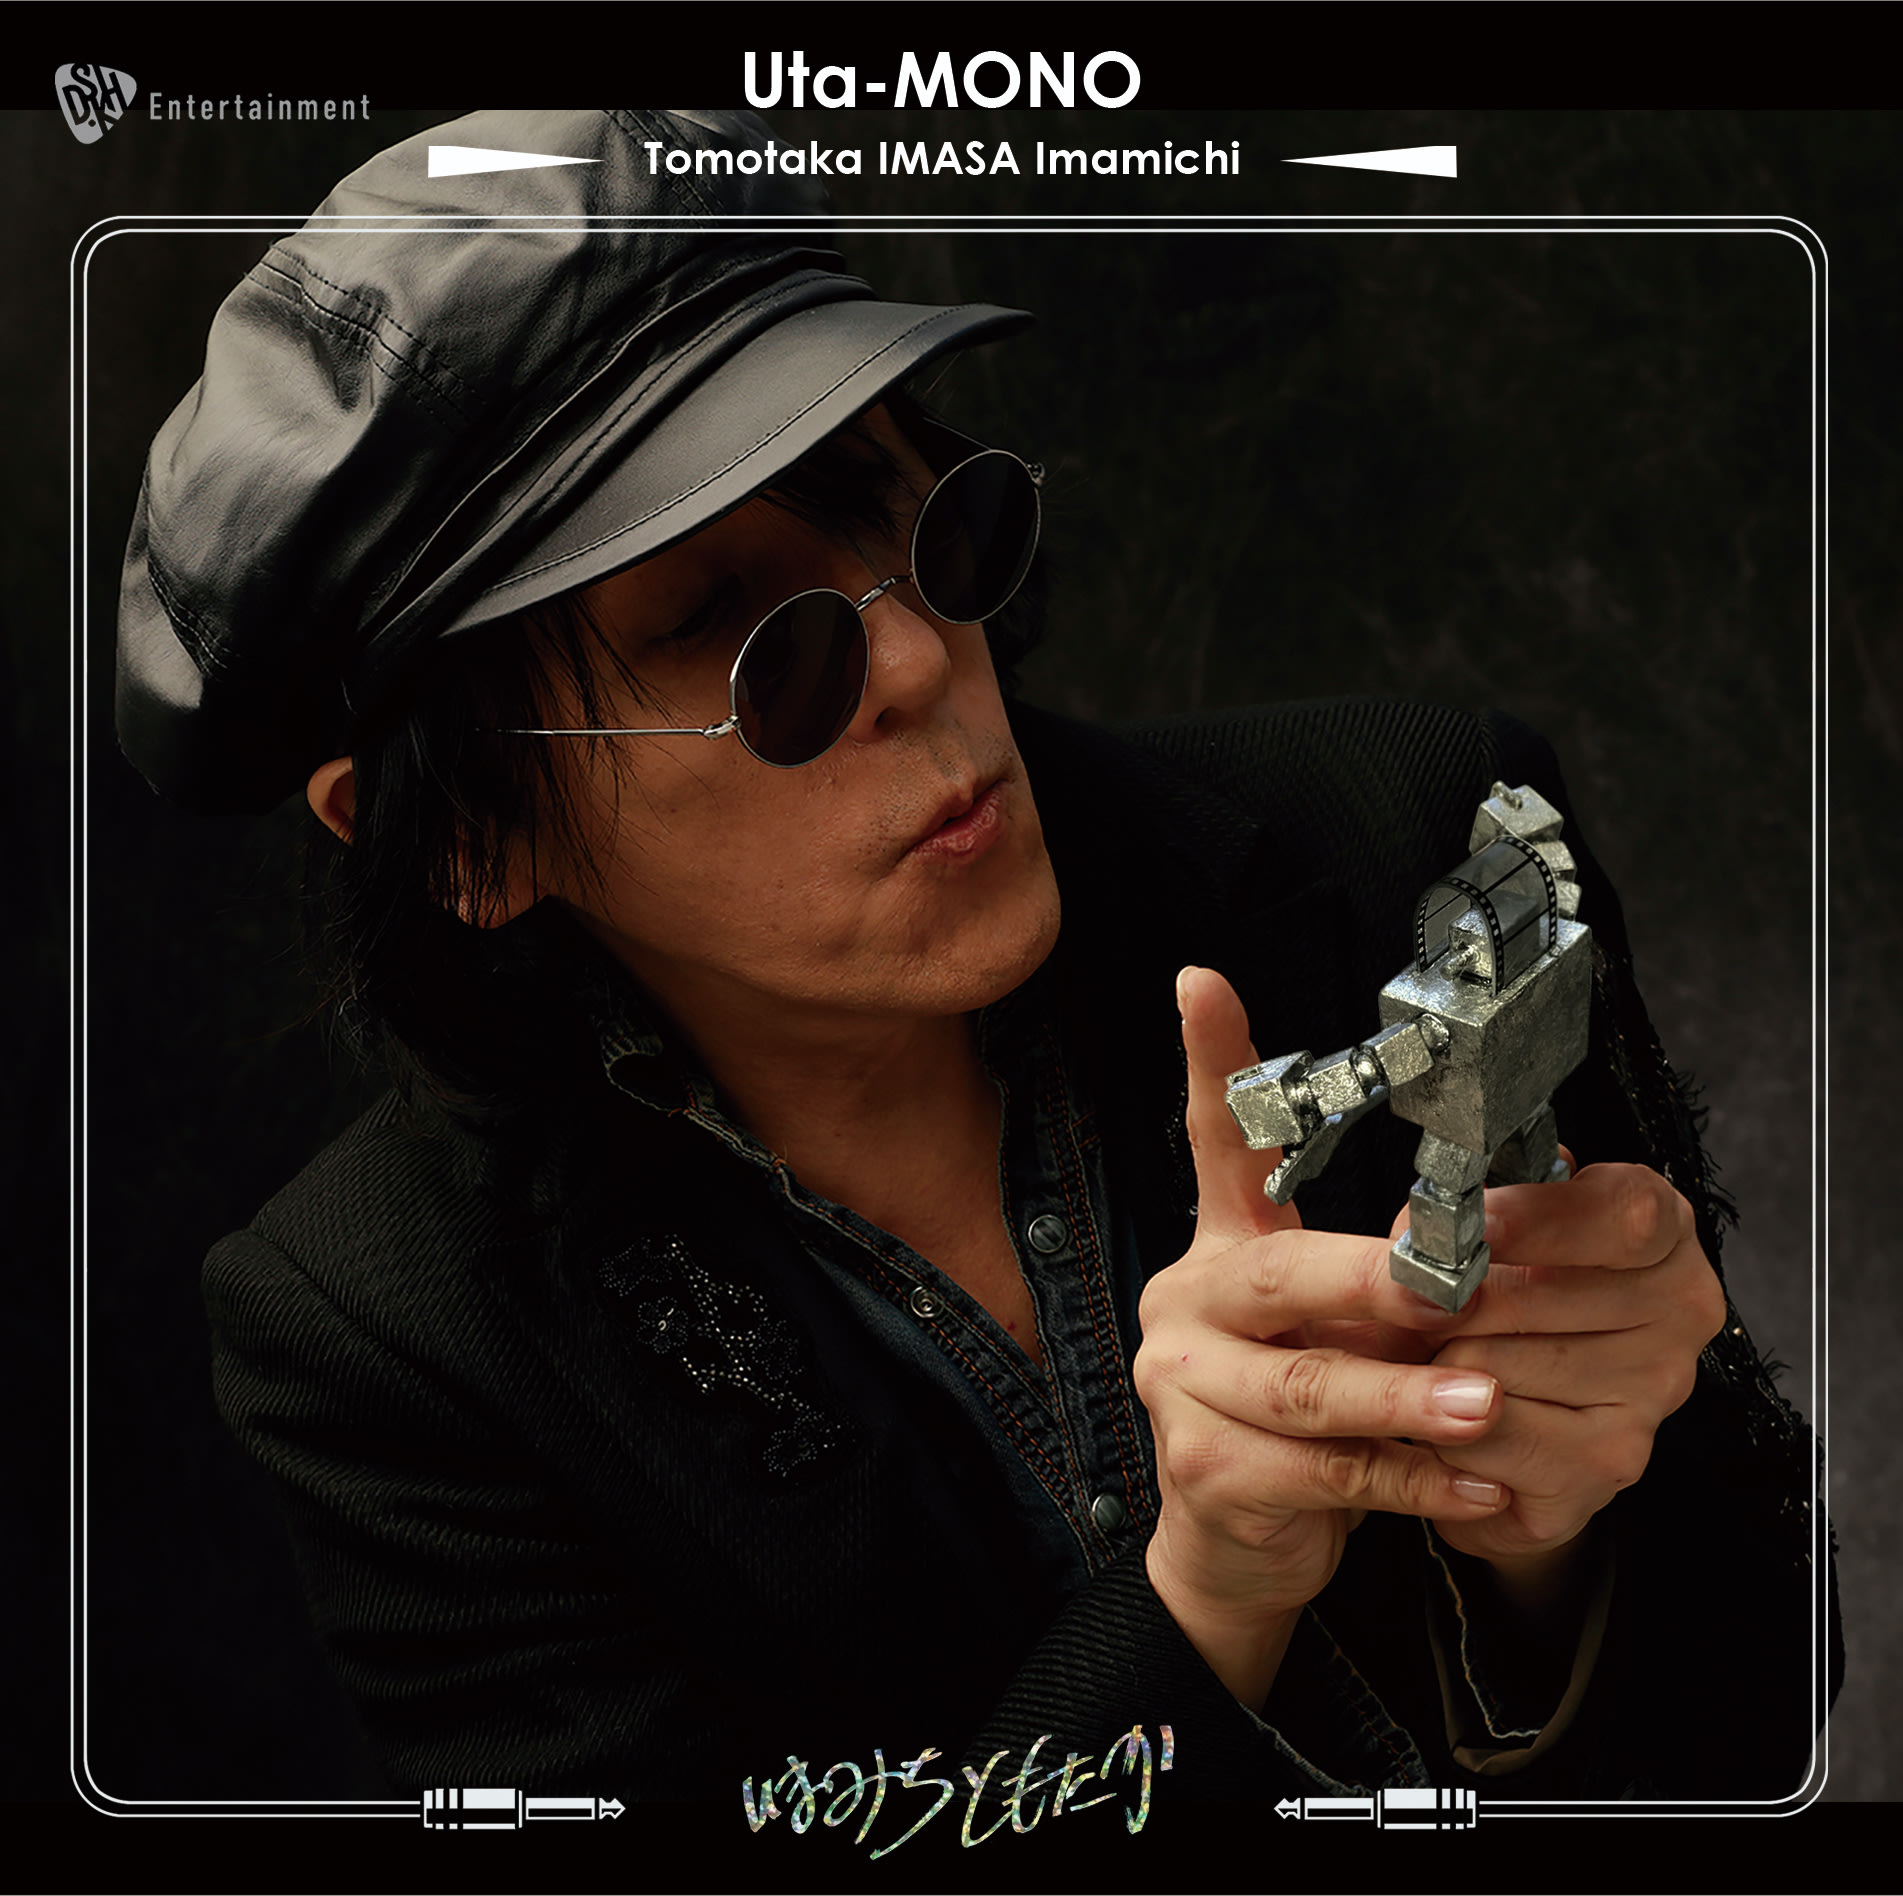 「Uta-MONO Tomotaka IMASA Imamichi 」アルバムCDの画像